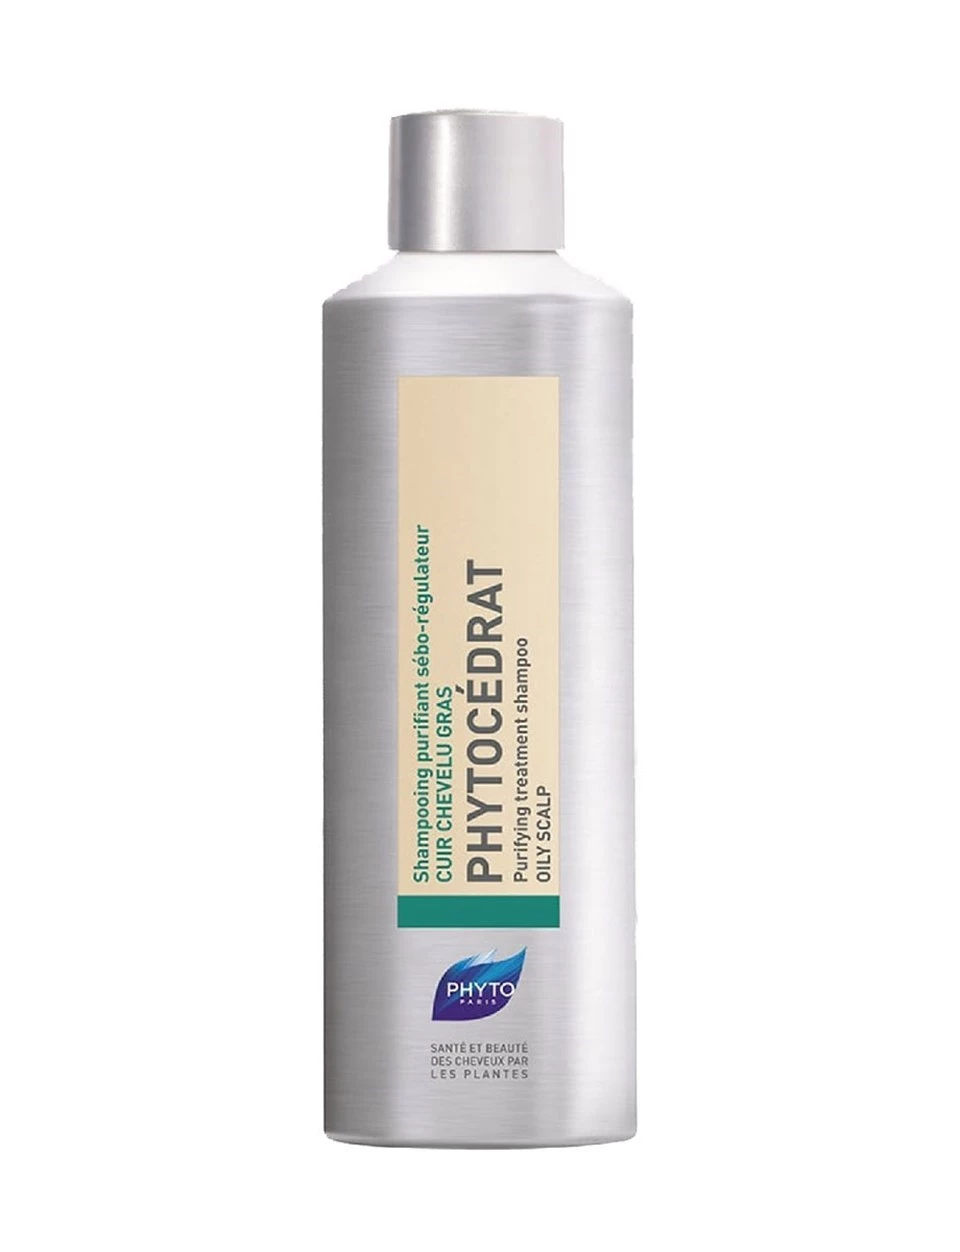 Phyto Phytocedrat Şampuan 250 ml - Yağlı Saçlar için Sebum Düzenleyici Şampuan